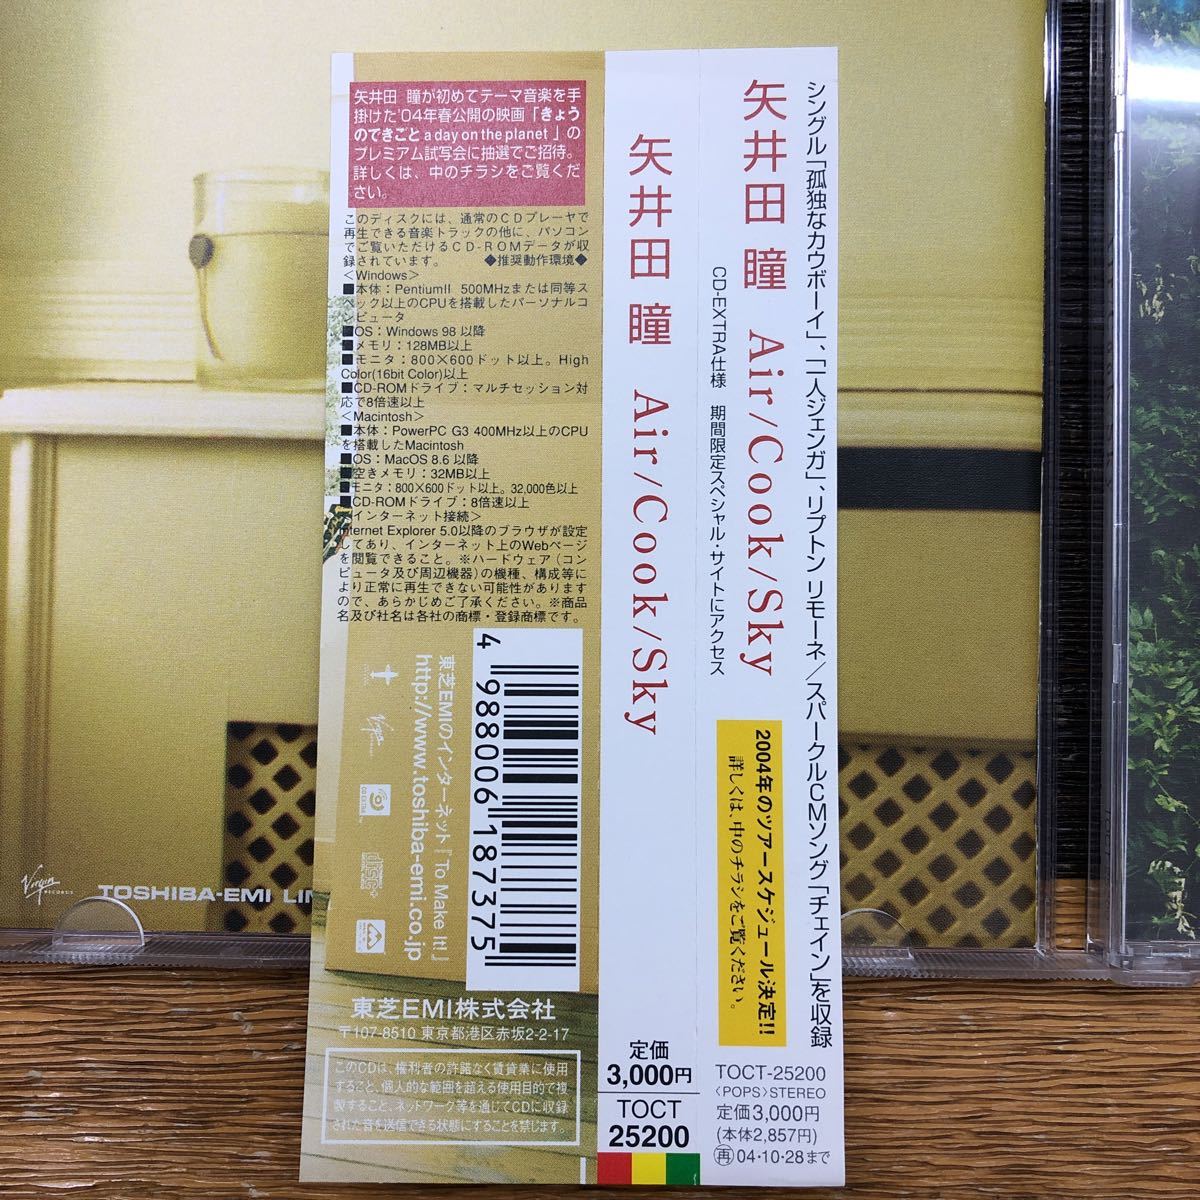 CD 矢井田瞳 Air/Cook/Sky アルバムCD 11曲入り_画像8